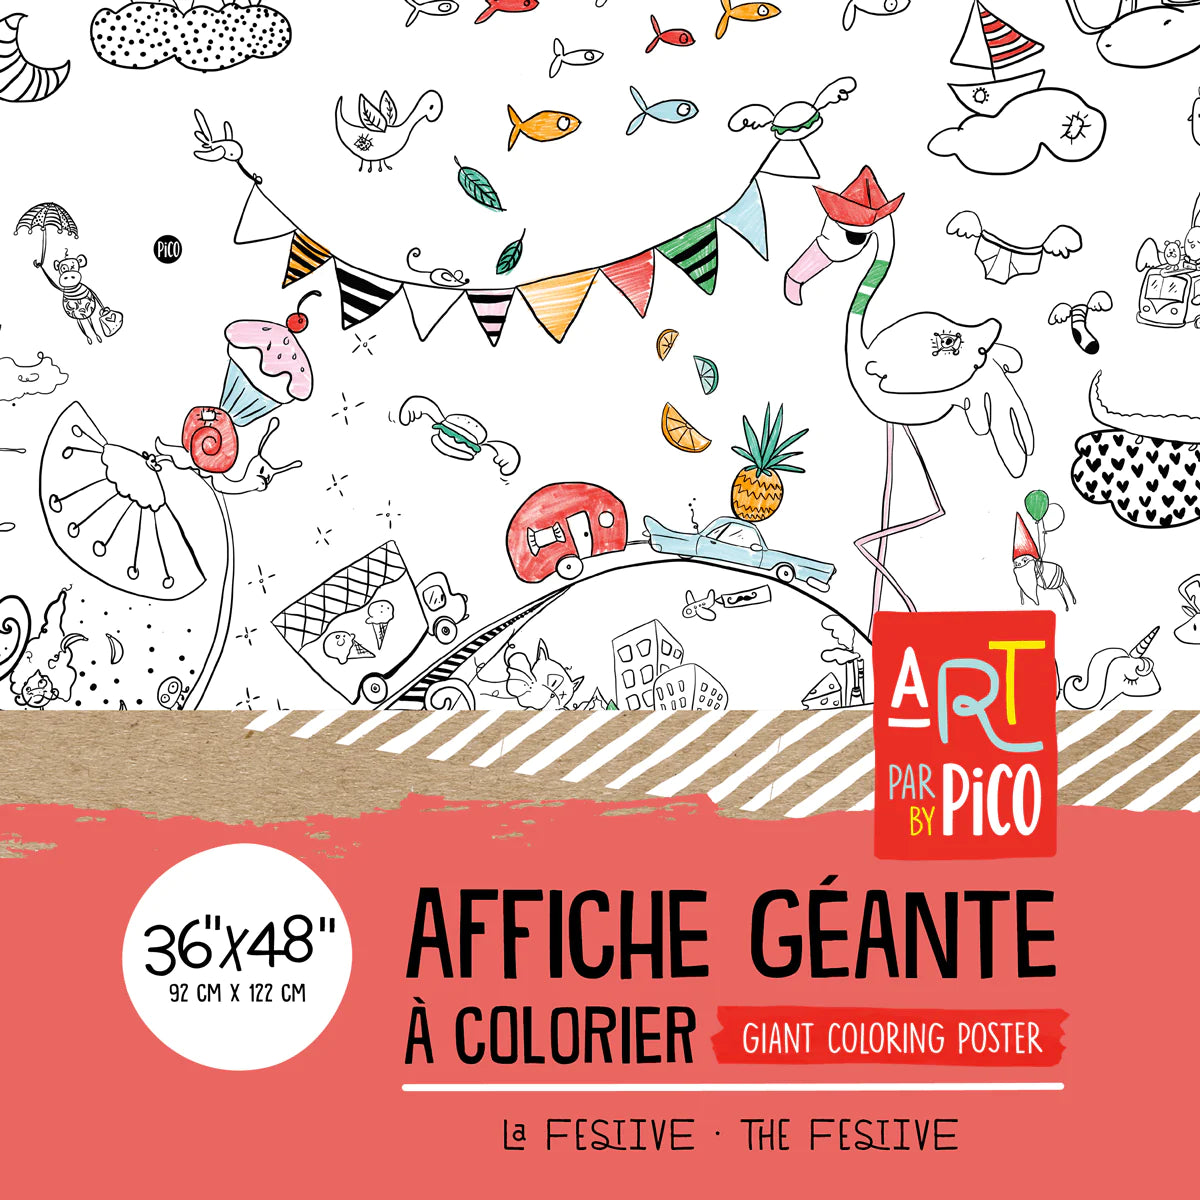 Boutique Petites Fleurs - Coloriage Géant - La festive pico-503 - Picotatoo